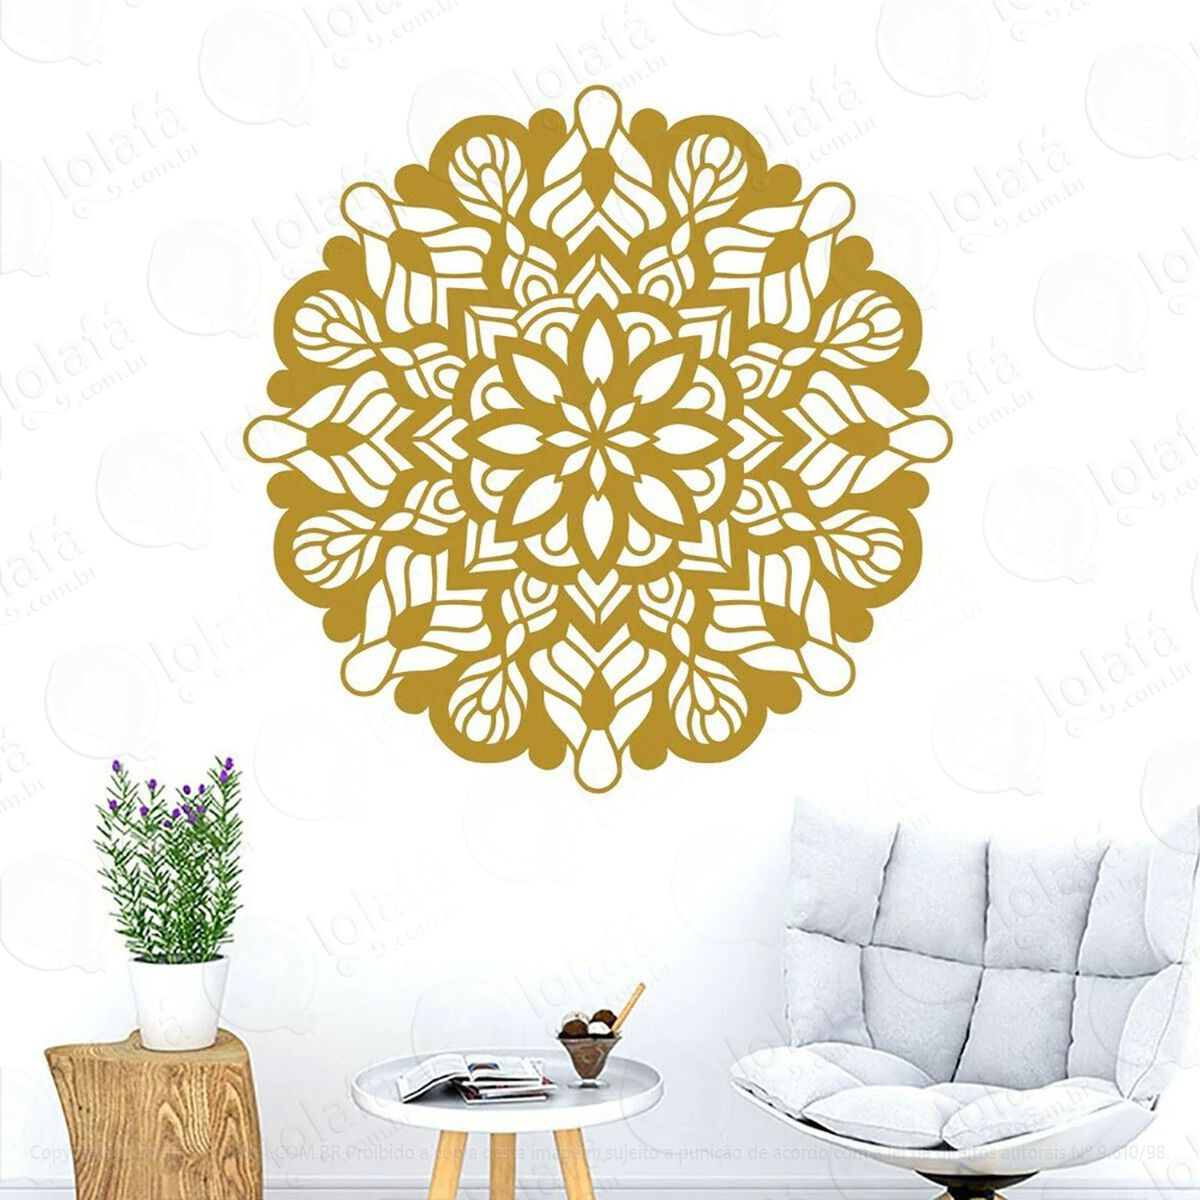 mandala seja livre adesivo de parede decorativo para casa, quarto, sala e vidro - mod:384